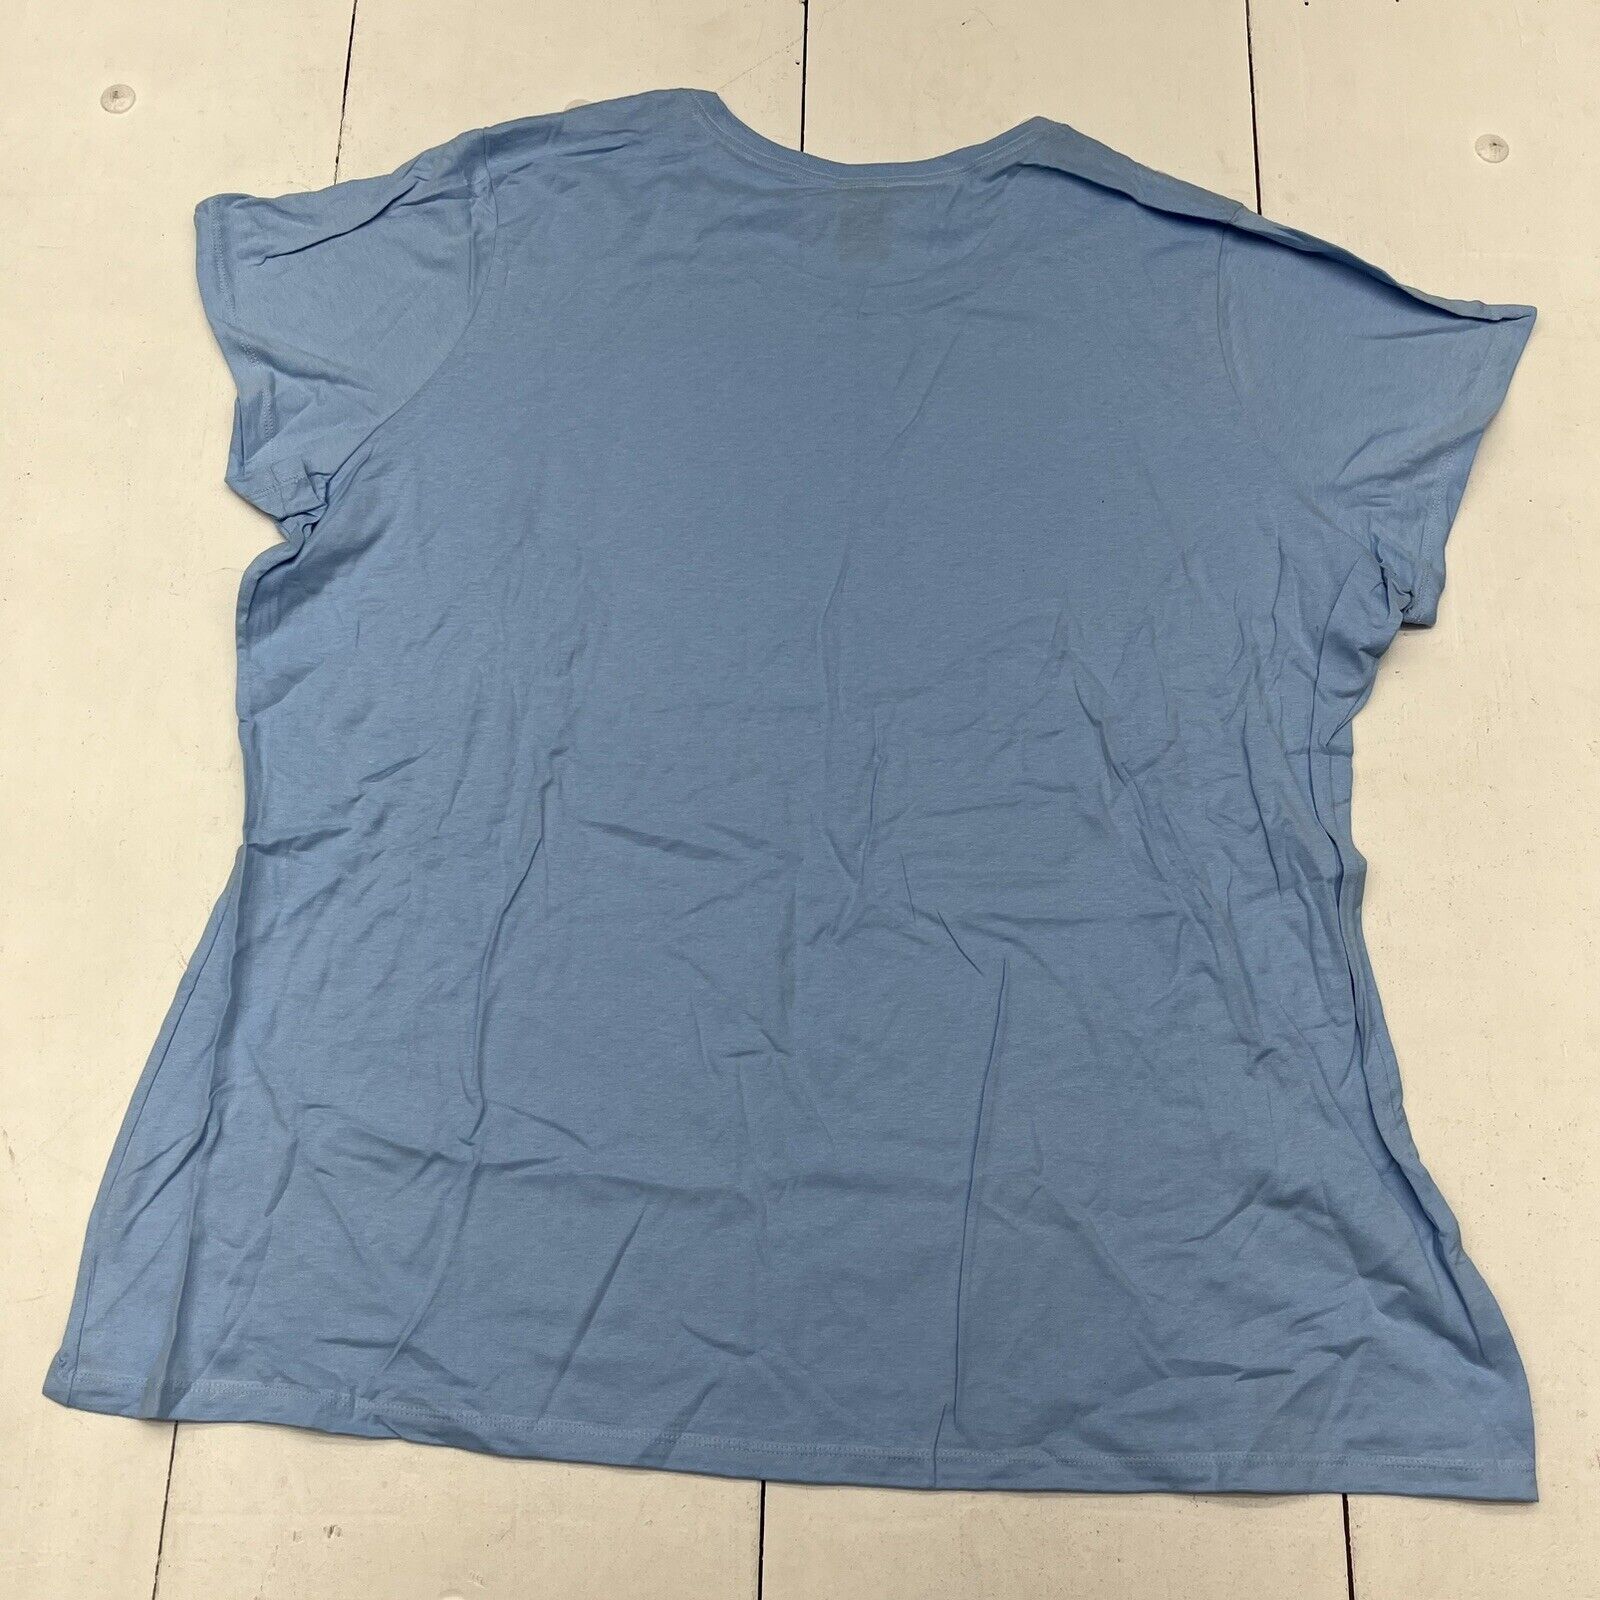 Hanes Navy Blue Athletic Long Sleeve T-Shirt Unisex Size Large NEW